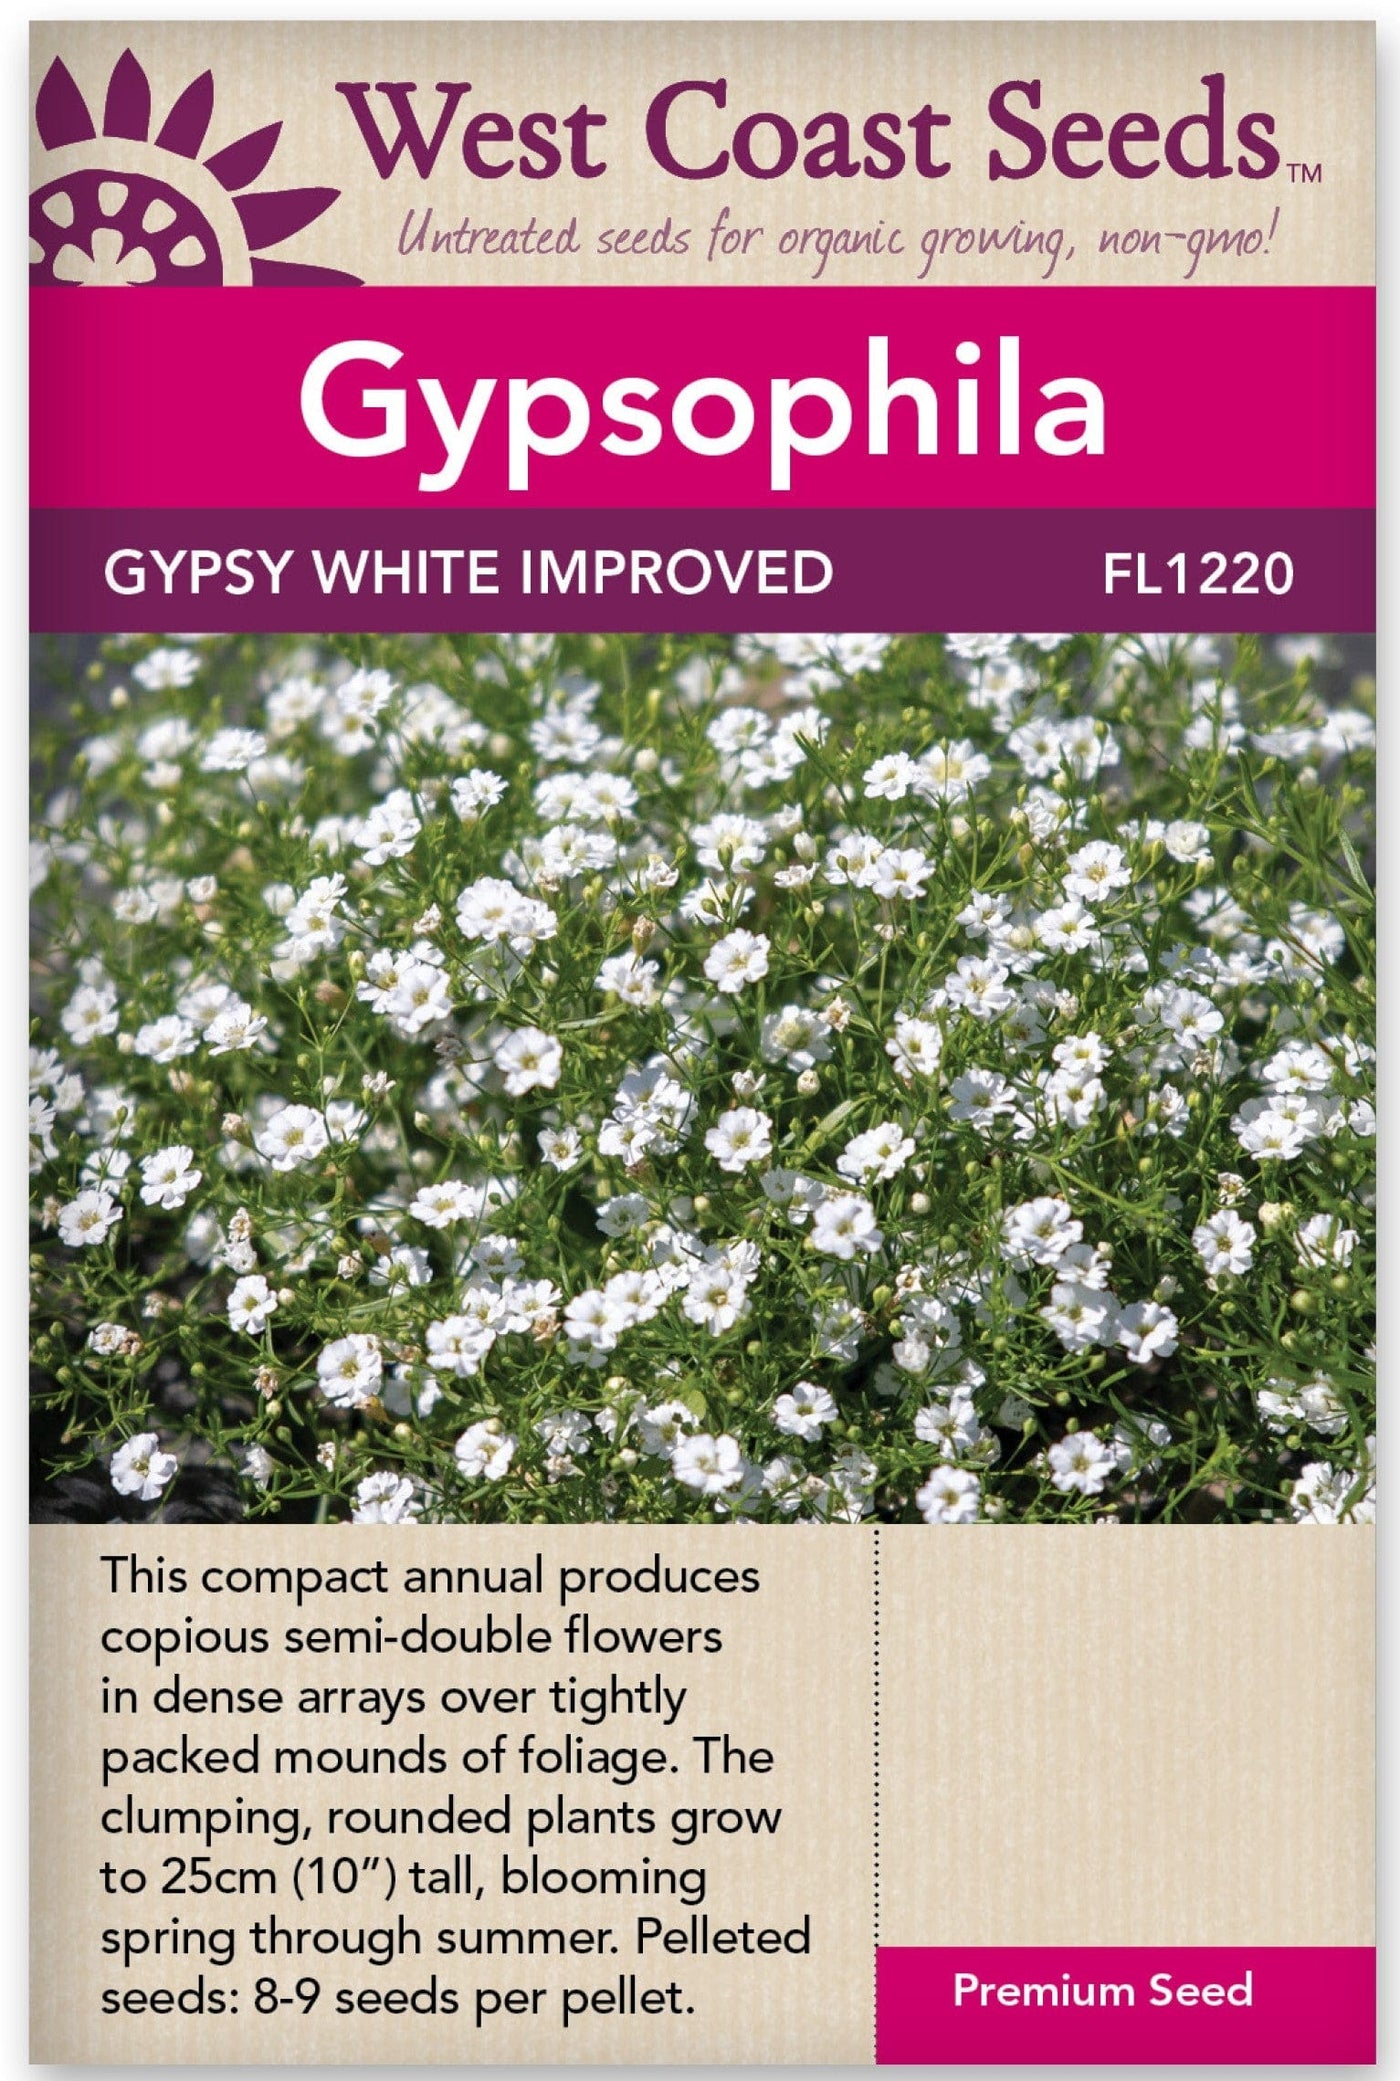 Gypsophila Gypsy White - West Coast Seeds